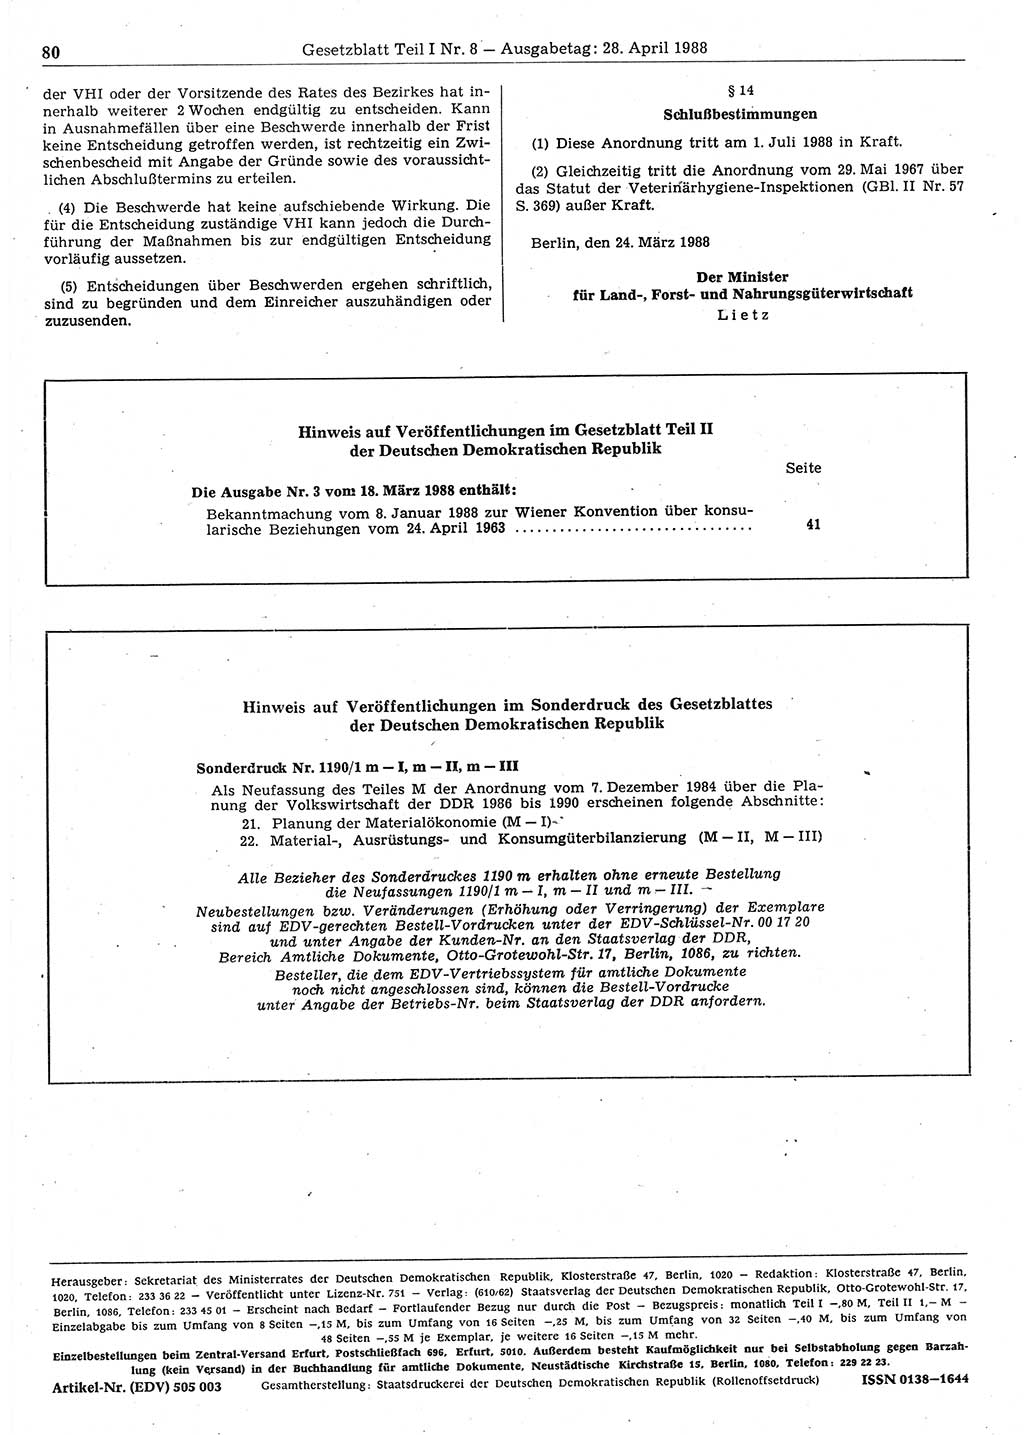 Gesetzblatt (GBl.) der Deutschen Demokratischen Republik (DDR) Teil Ⅰ 1988, Seite 80 (GBl. DDR Ⅰ 1988, S. 80)